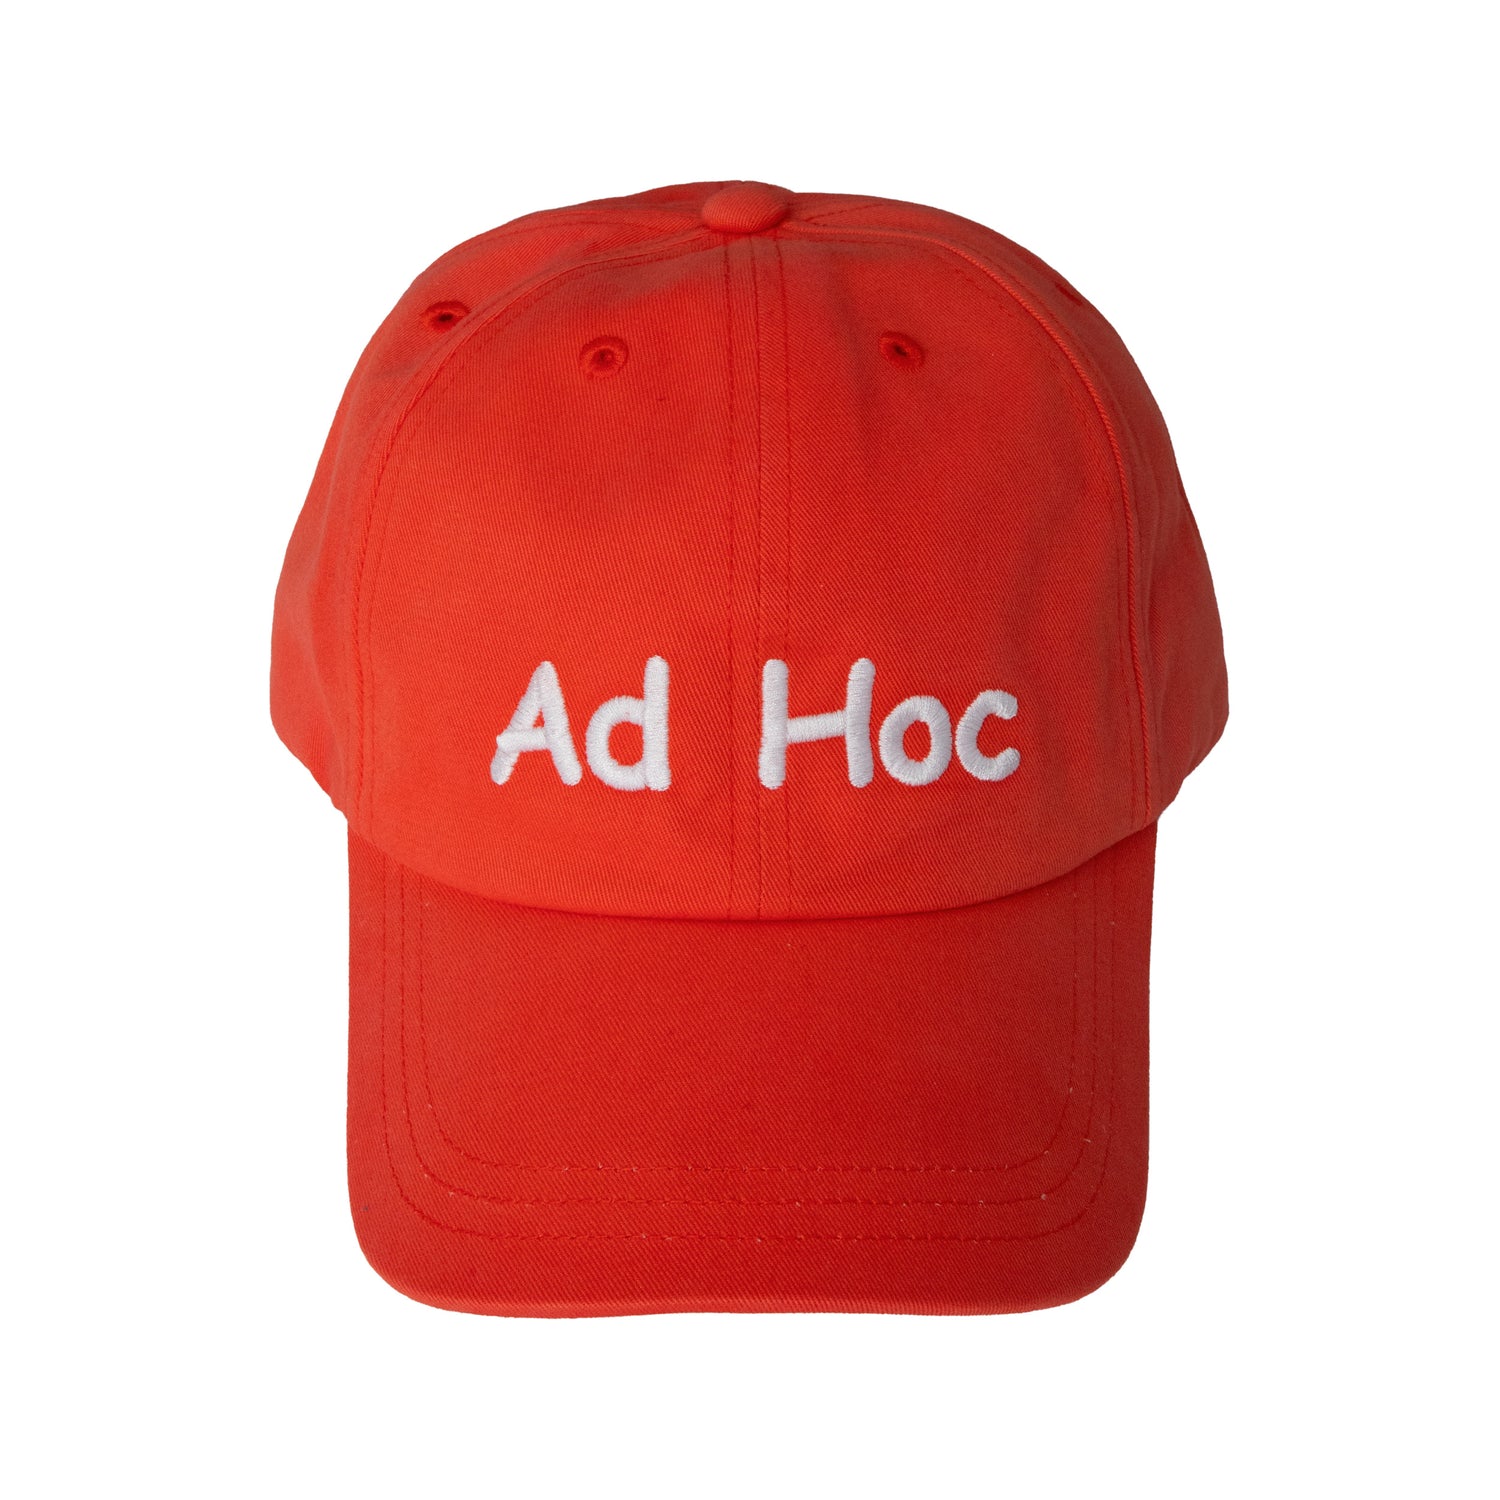 AD HOC CAP BRIGHT RED